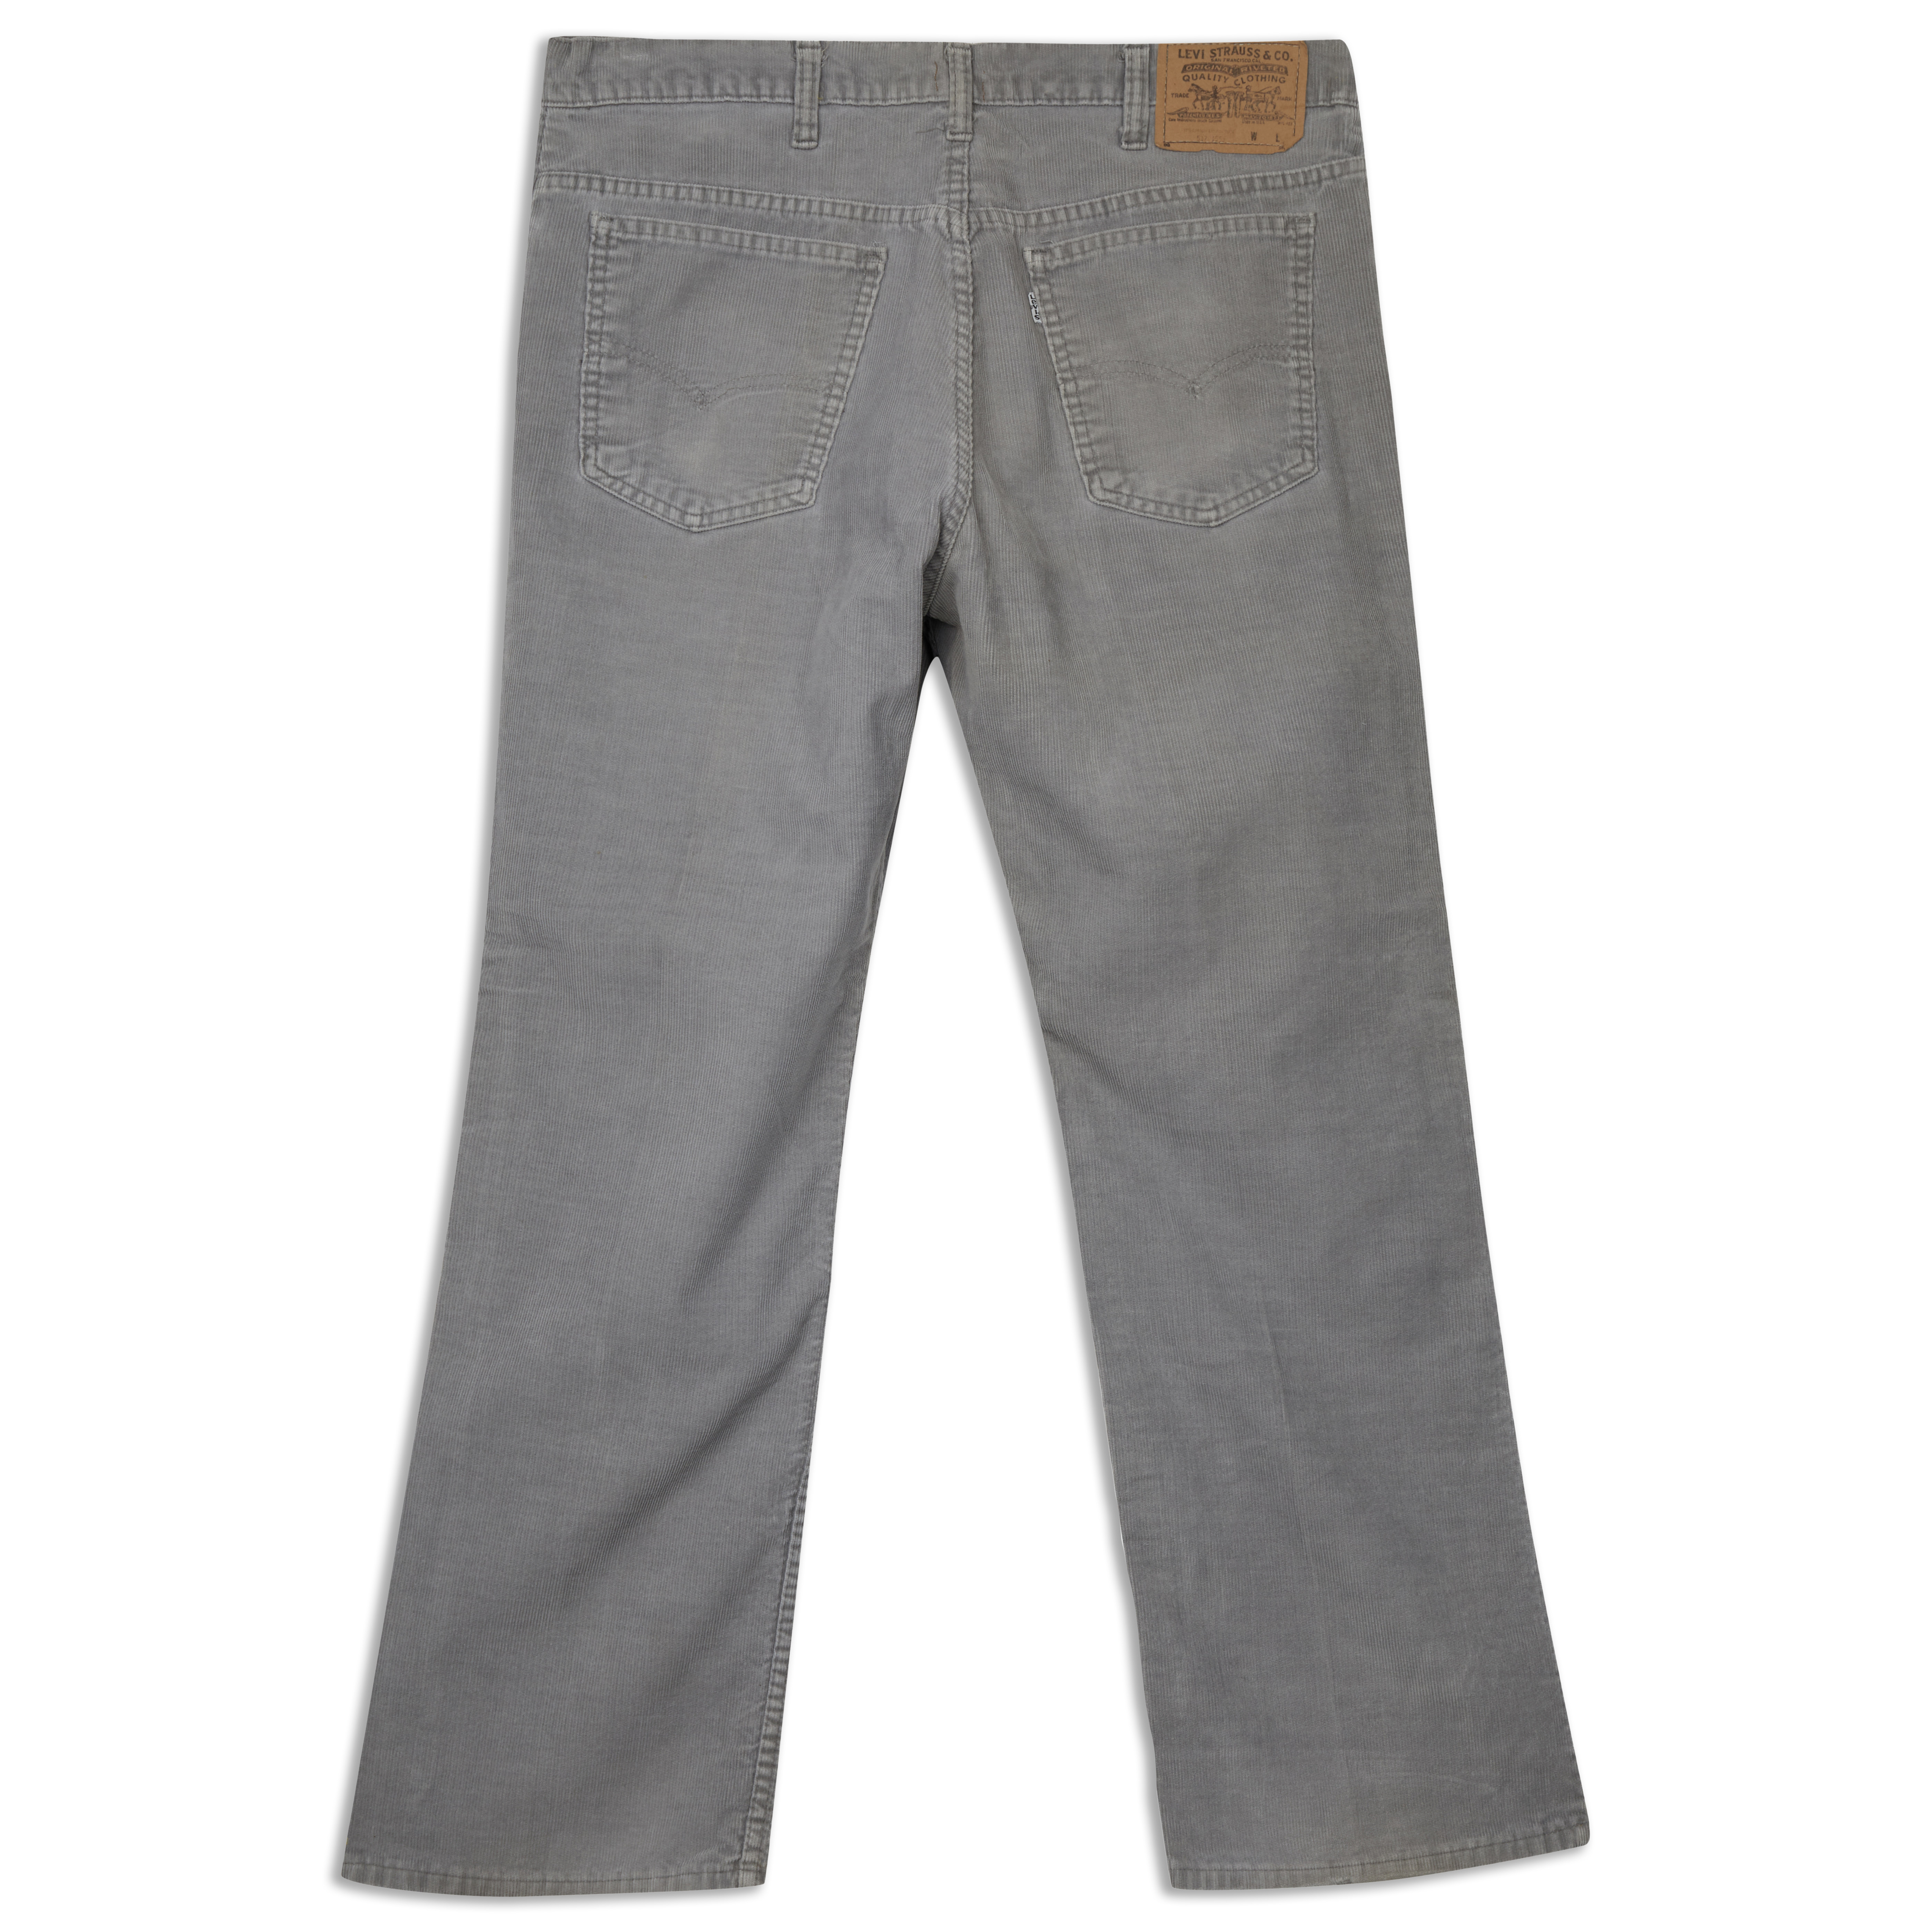 Levis Vintage 517™ Boot Cut Corduroy Jeans Blue